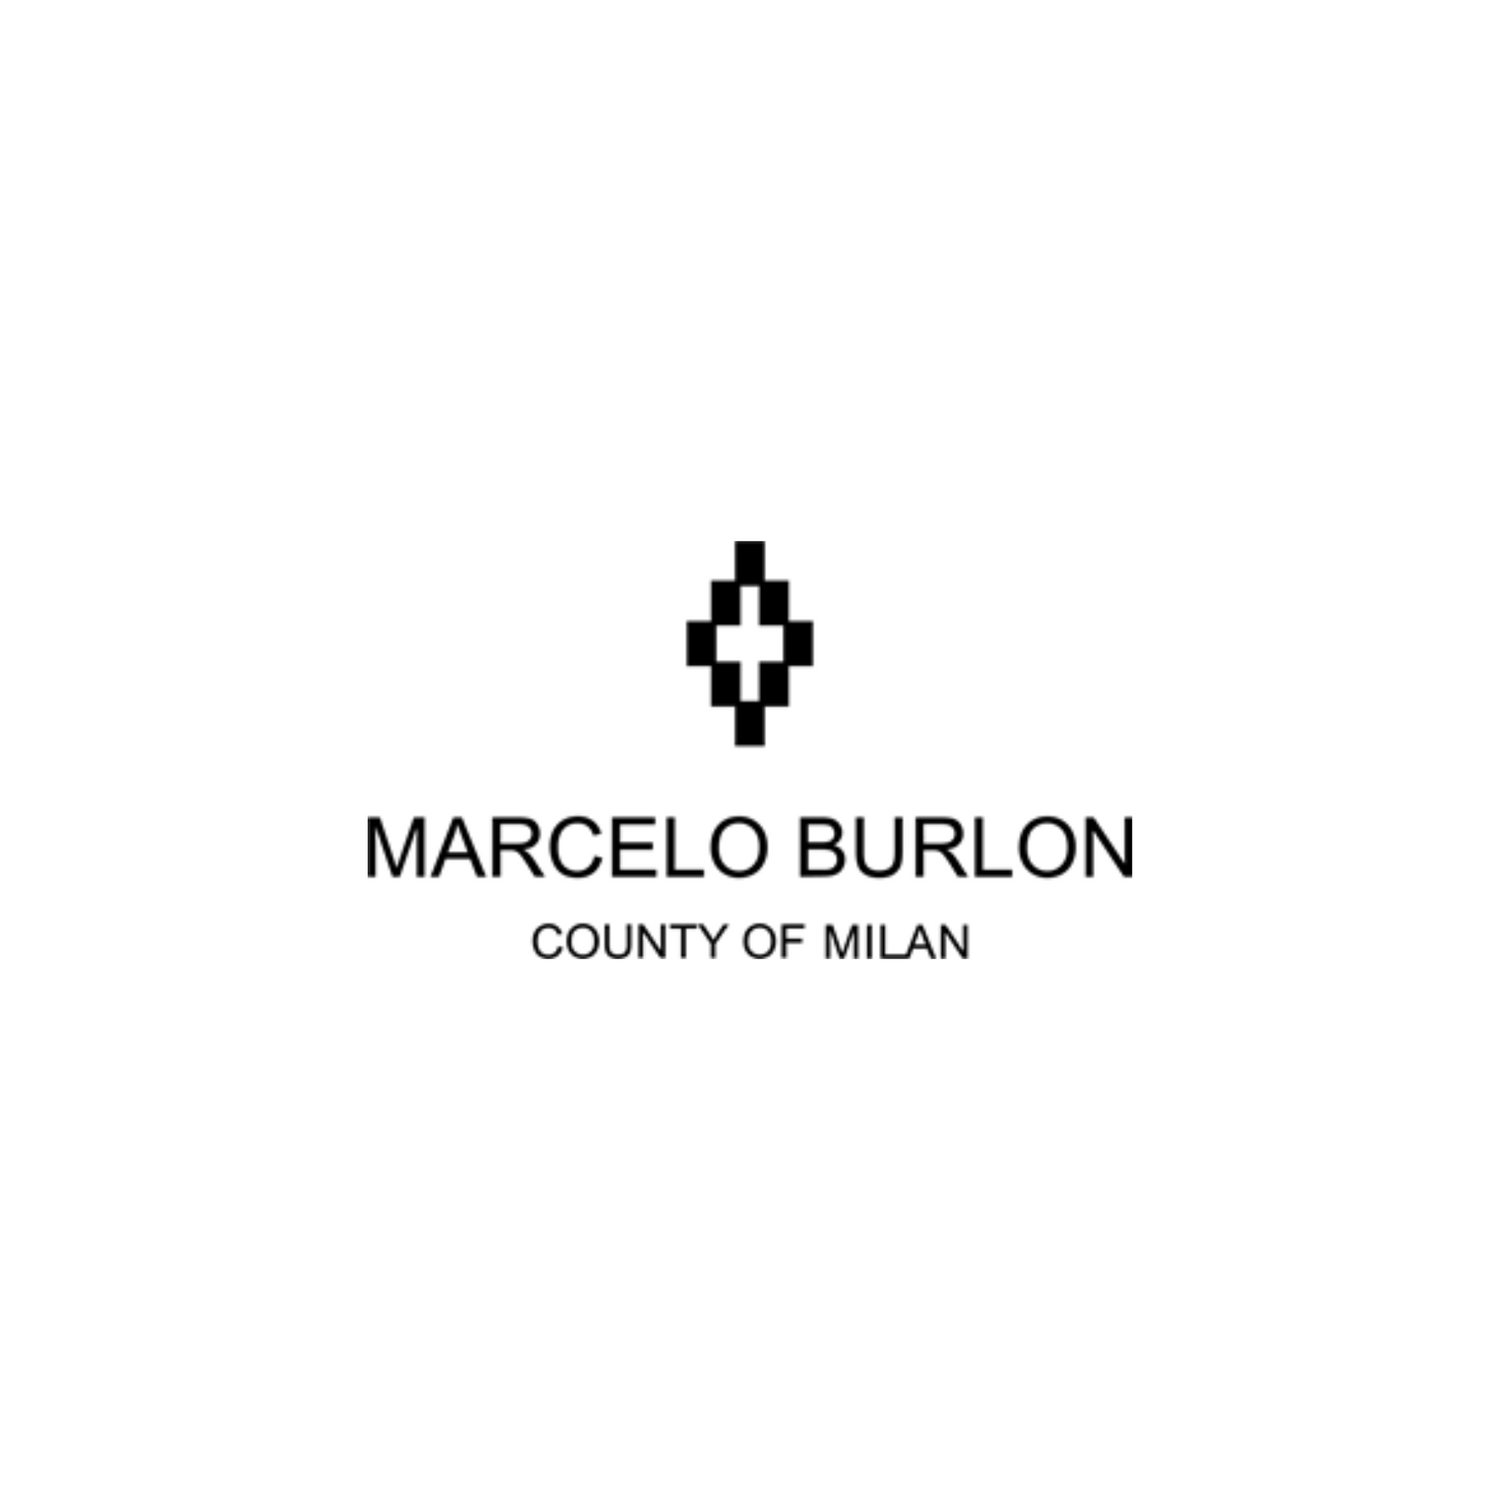 County of Milan - Marcelo Burlon